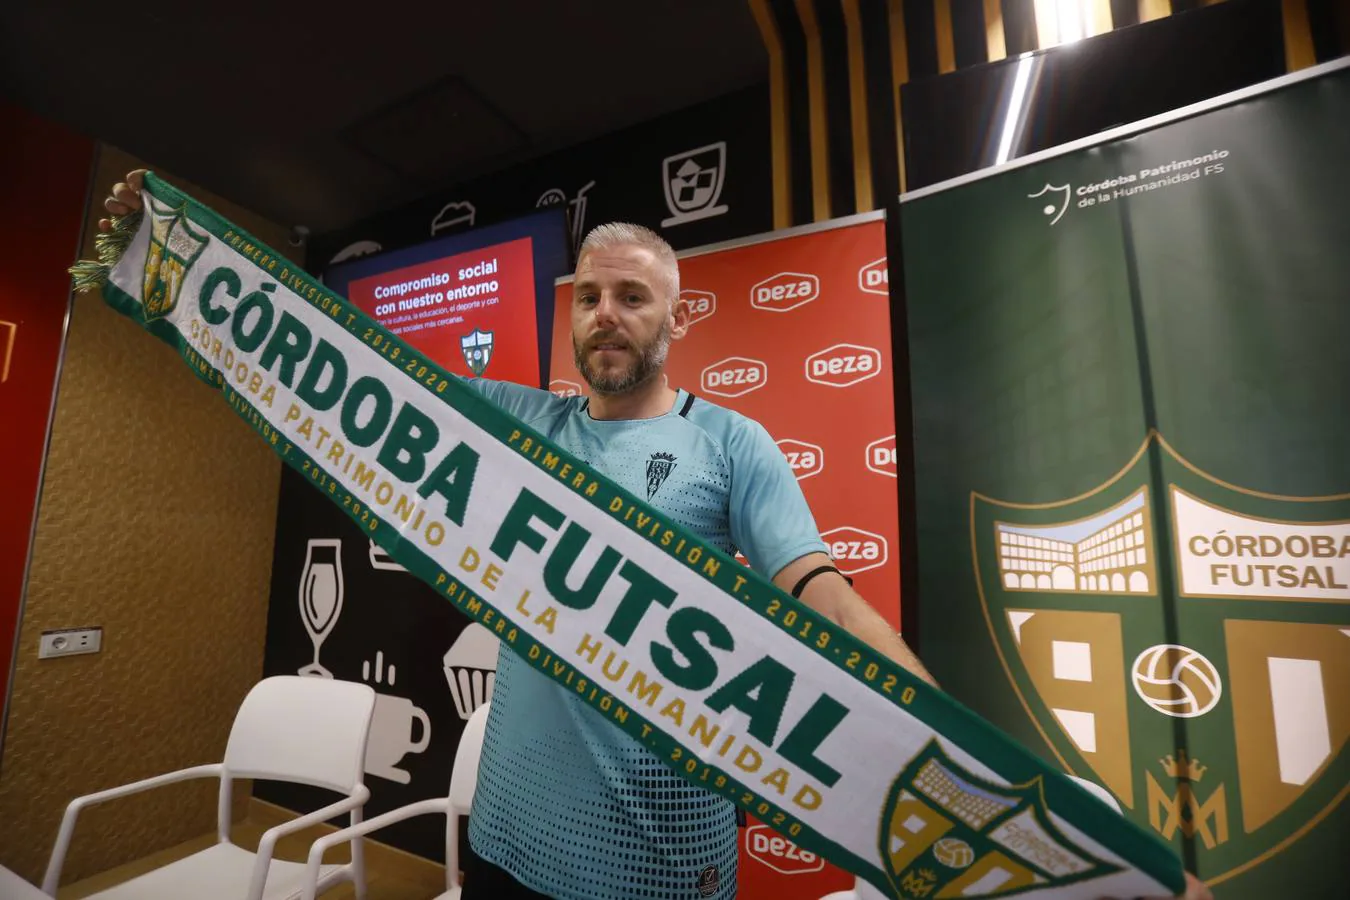 Las mejores imágenes de la presentación de Miguelín, fichaje estrella del Córdoba Patrimonio de fútbol sala